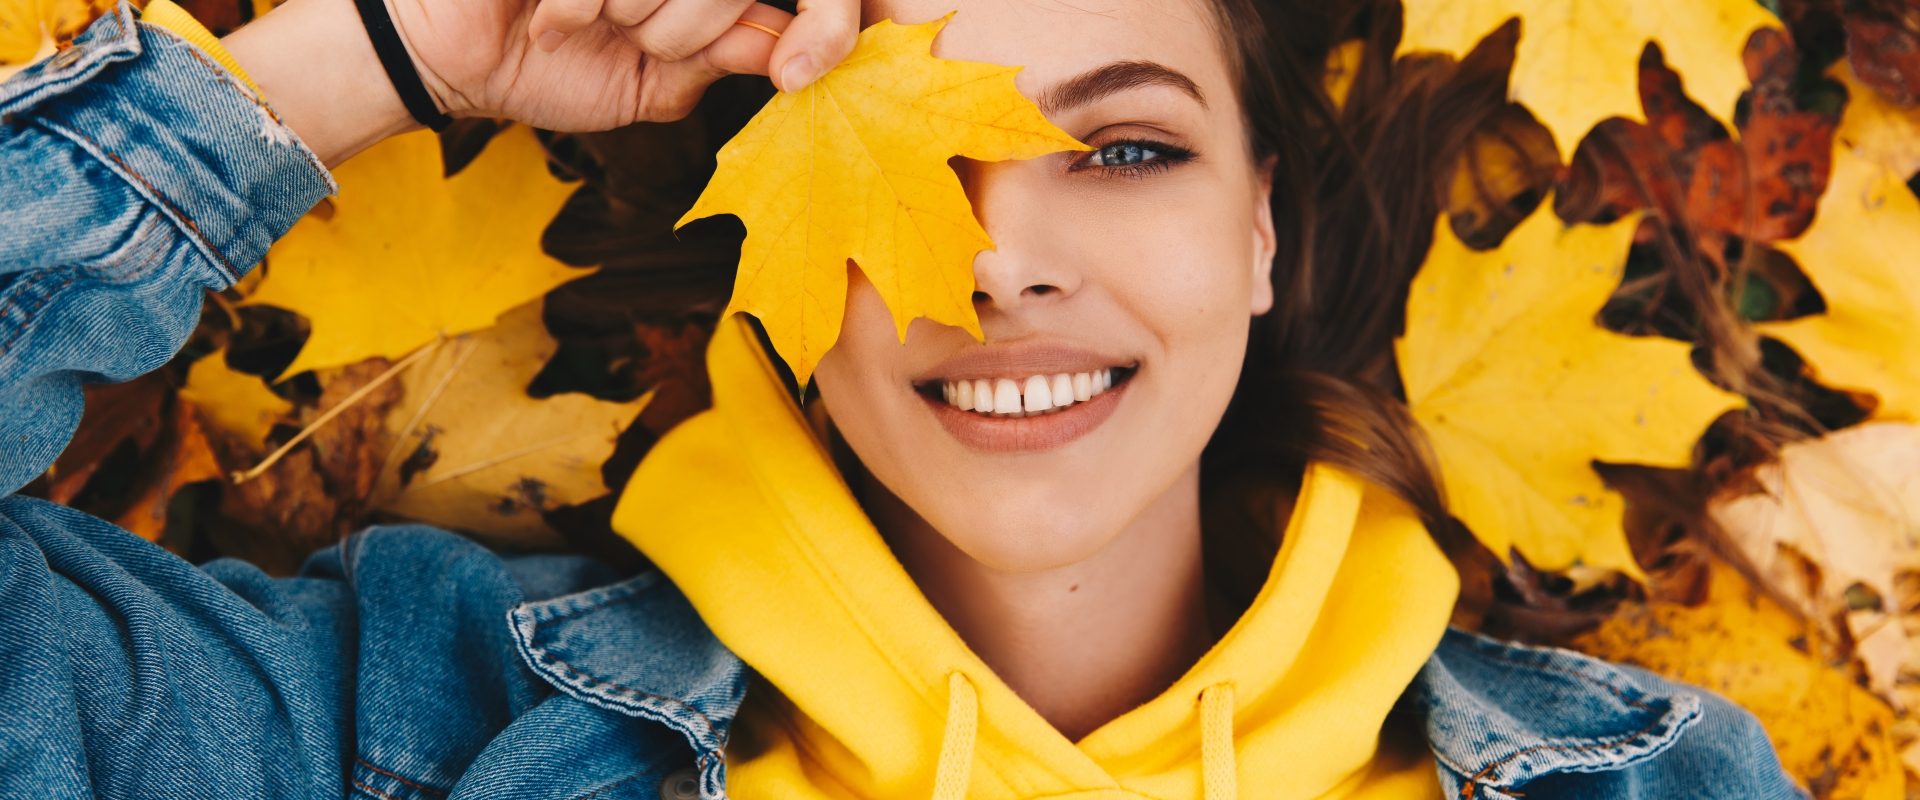 Odporność - czym jest, jak działa i jak ją budować? Dziewczyna w żółtej bluzie i kurtce jeansowej leży w jesiennych liściach i trzyma żółty liść przy twarzy, zasłaniając nim oko.